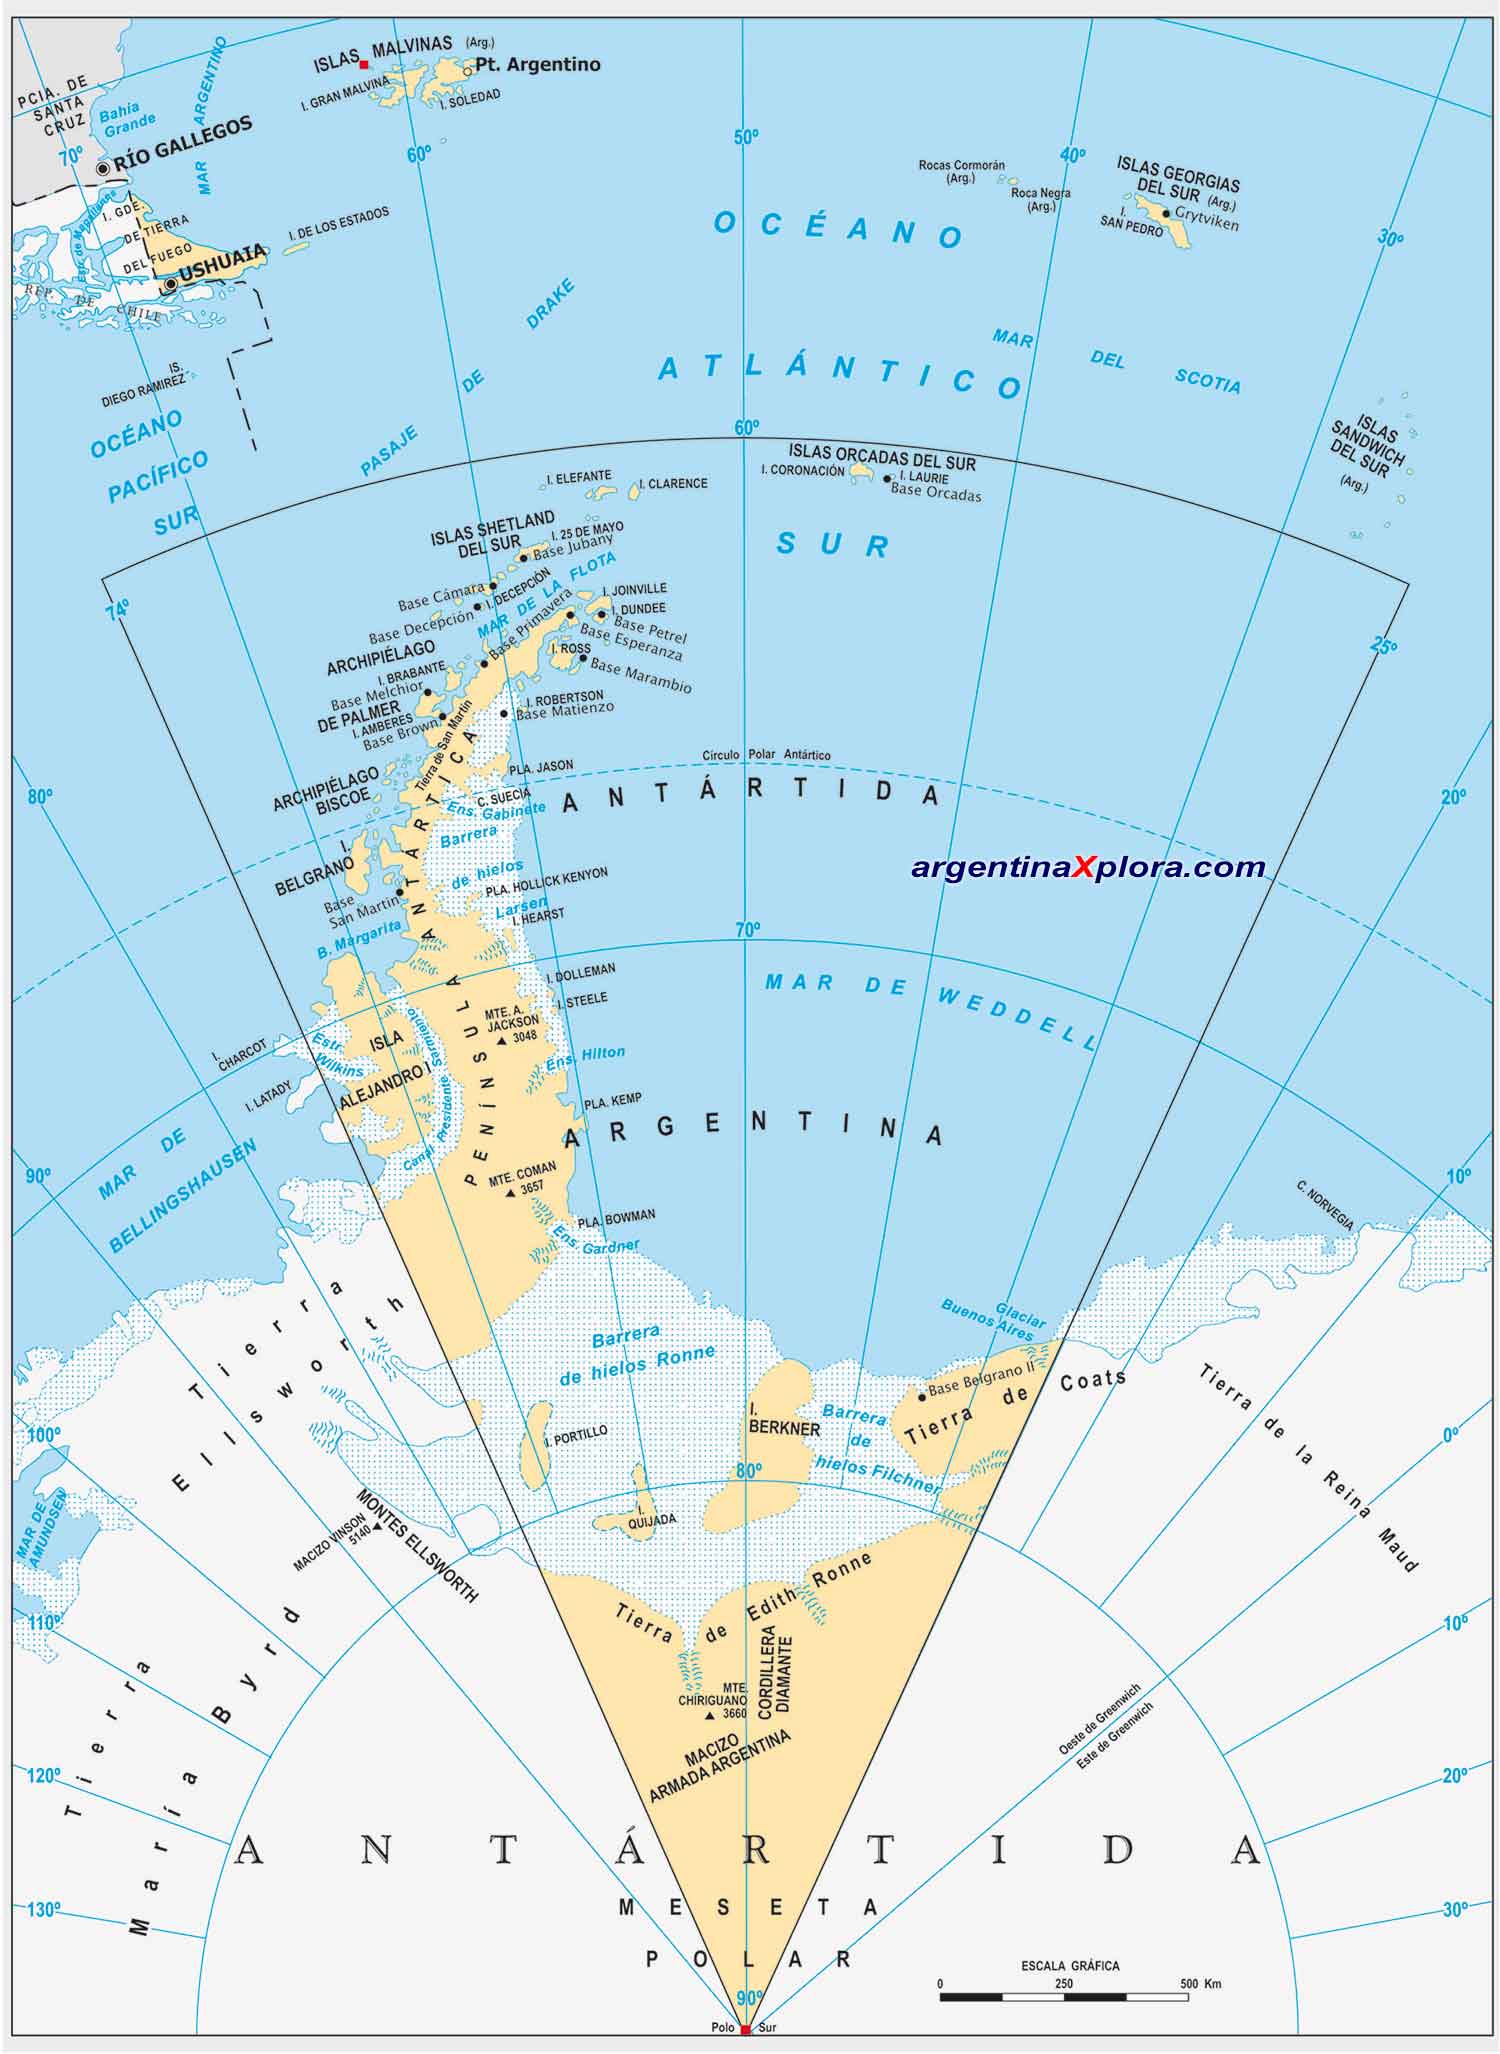 Mapa del Territorio Antártico argentino. Islas del Atlántico Sur y bases antárticas